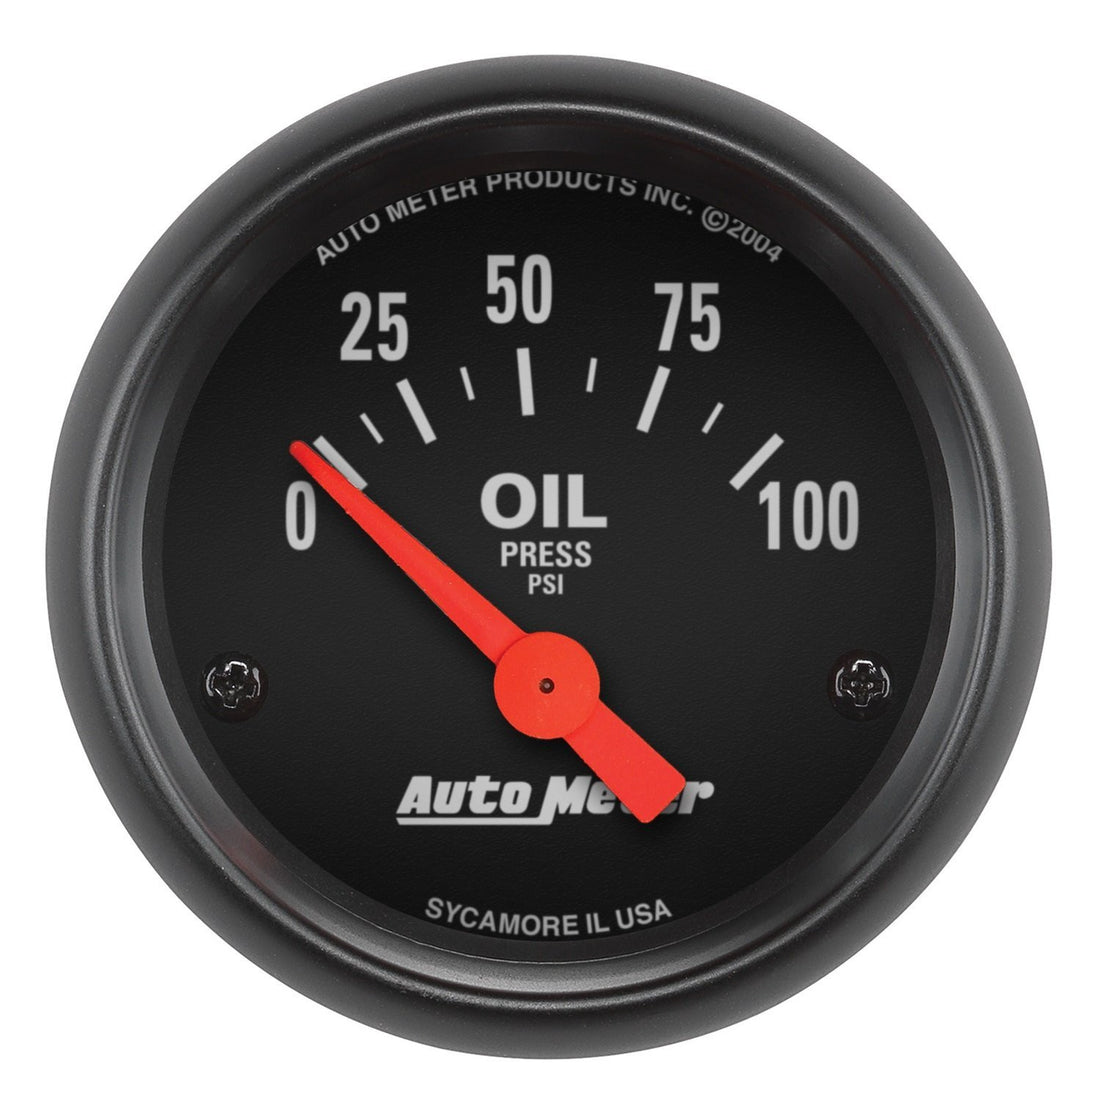 La presión de aceite de los motores Harley-Davidson: instalación de un reloj medidor